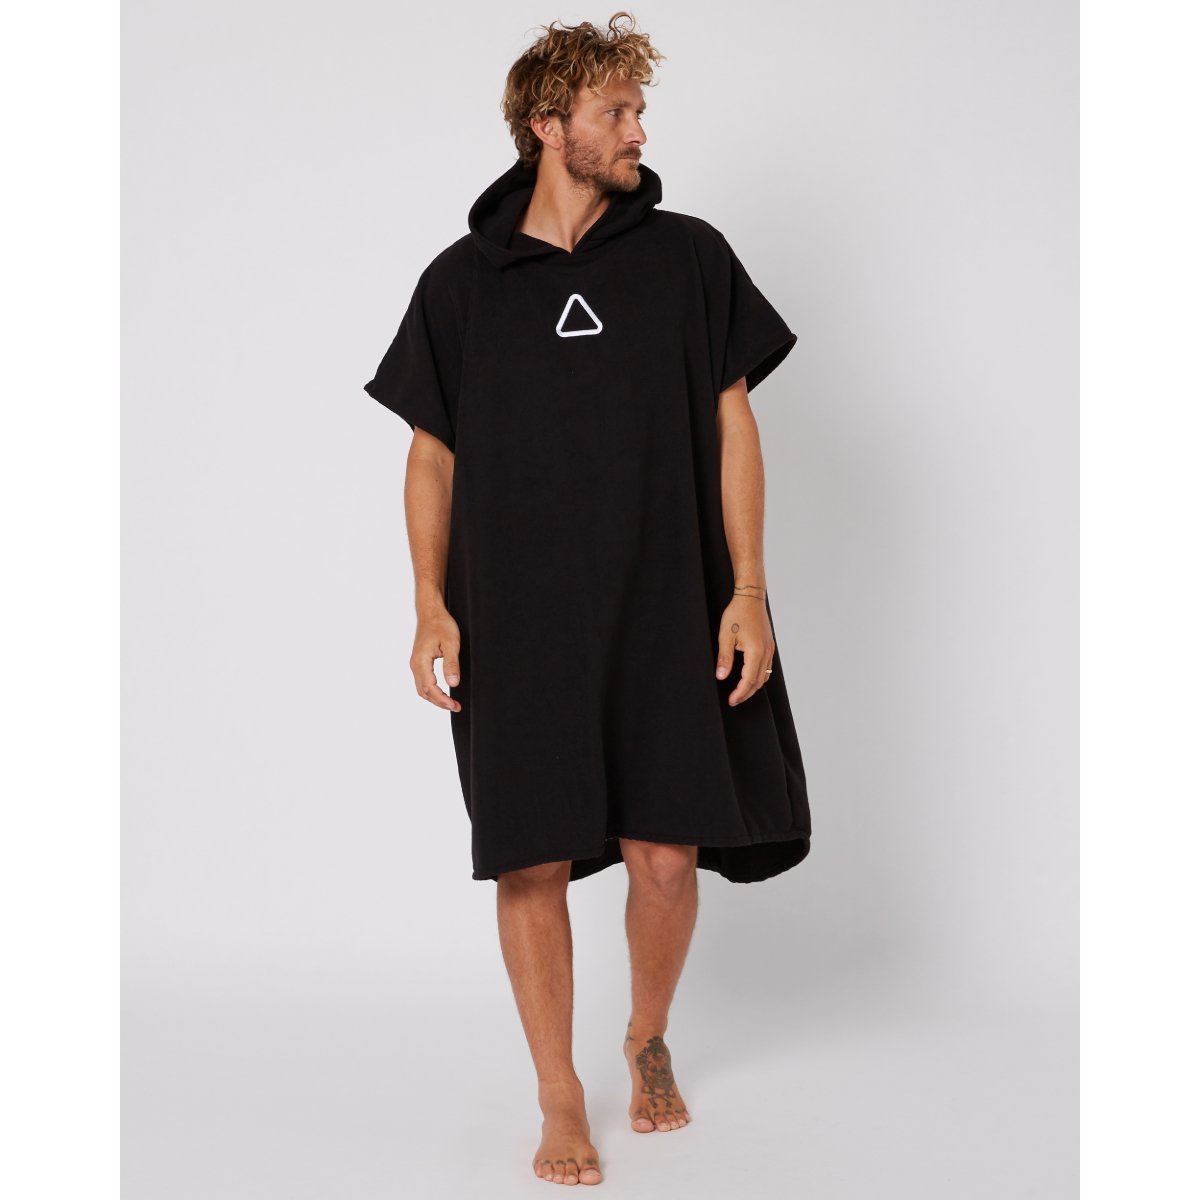 Follow Corp Towelie in Black - BoardCo